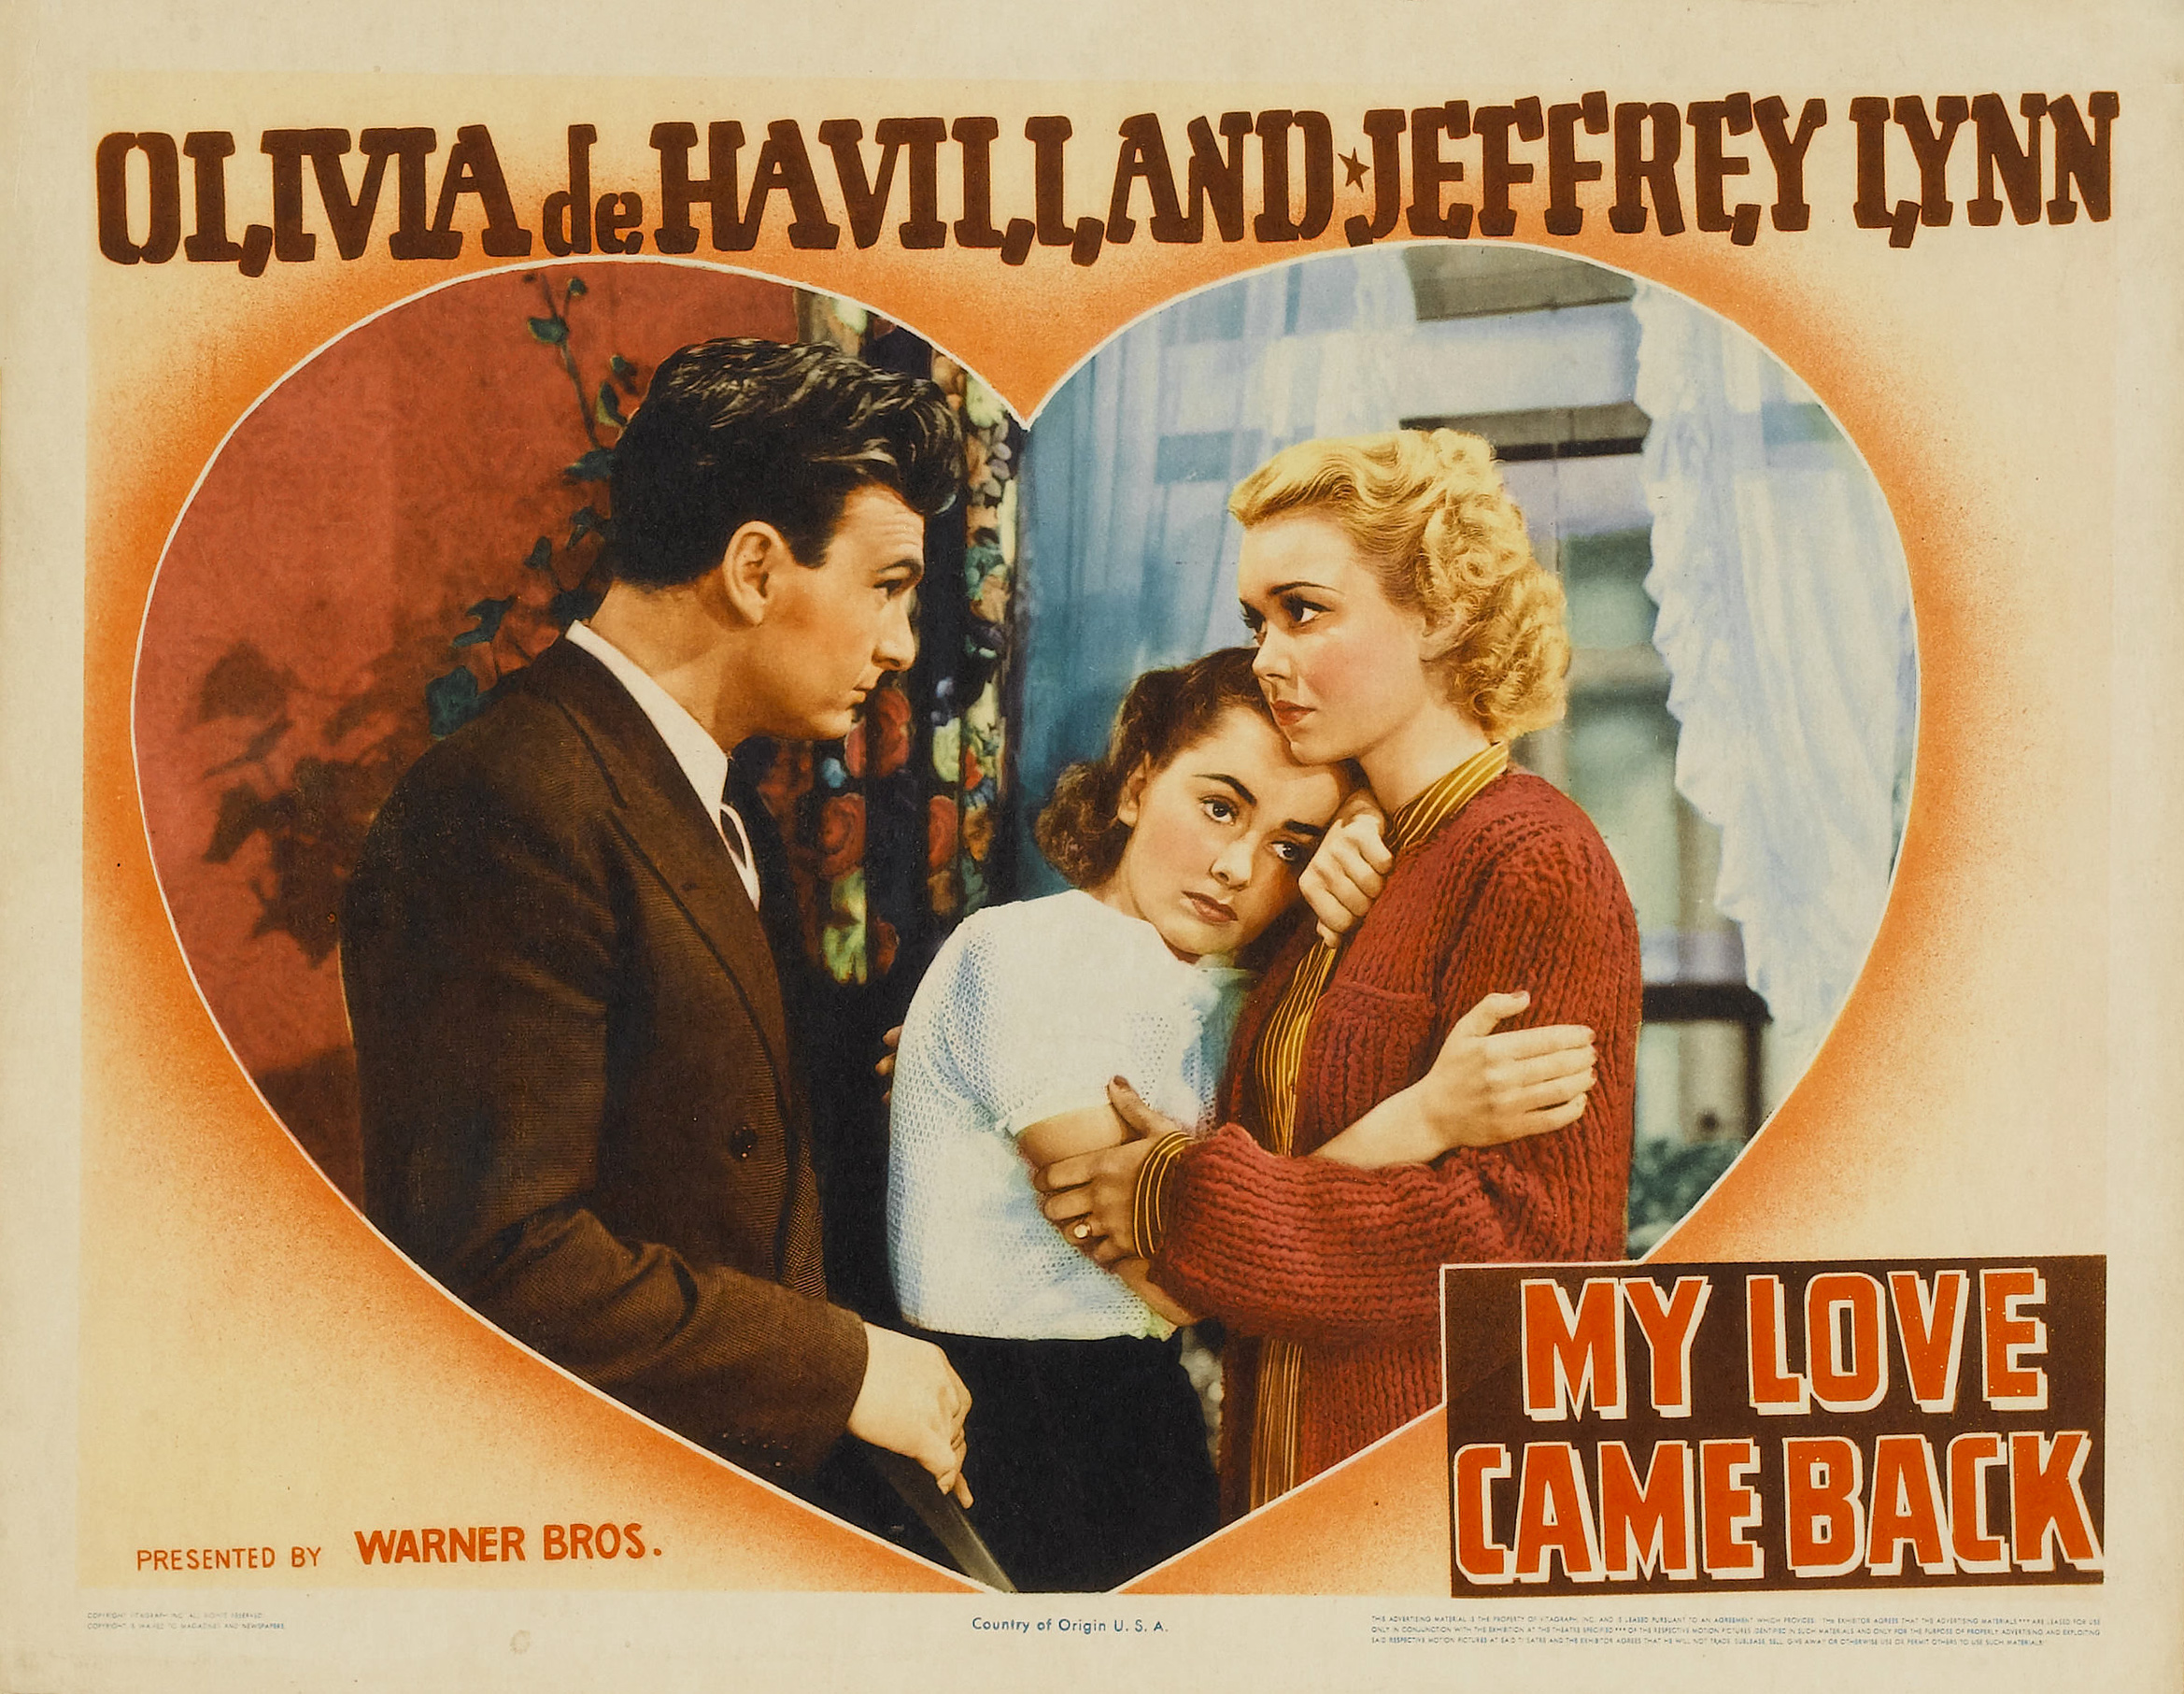 My Love Came Back (1940) Screenshot 4 